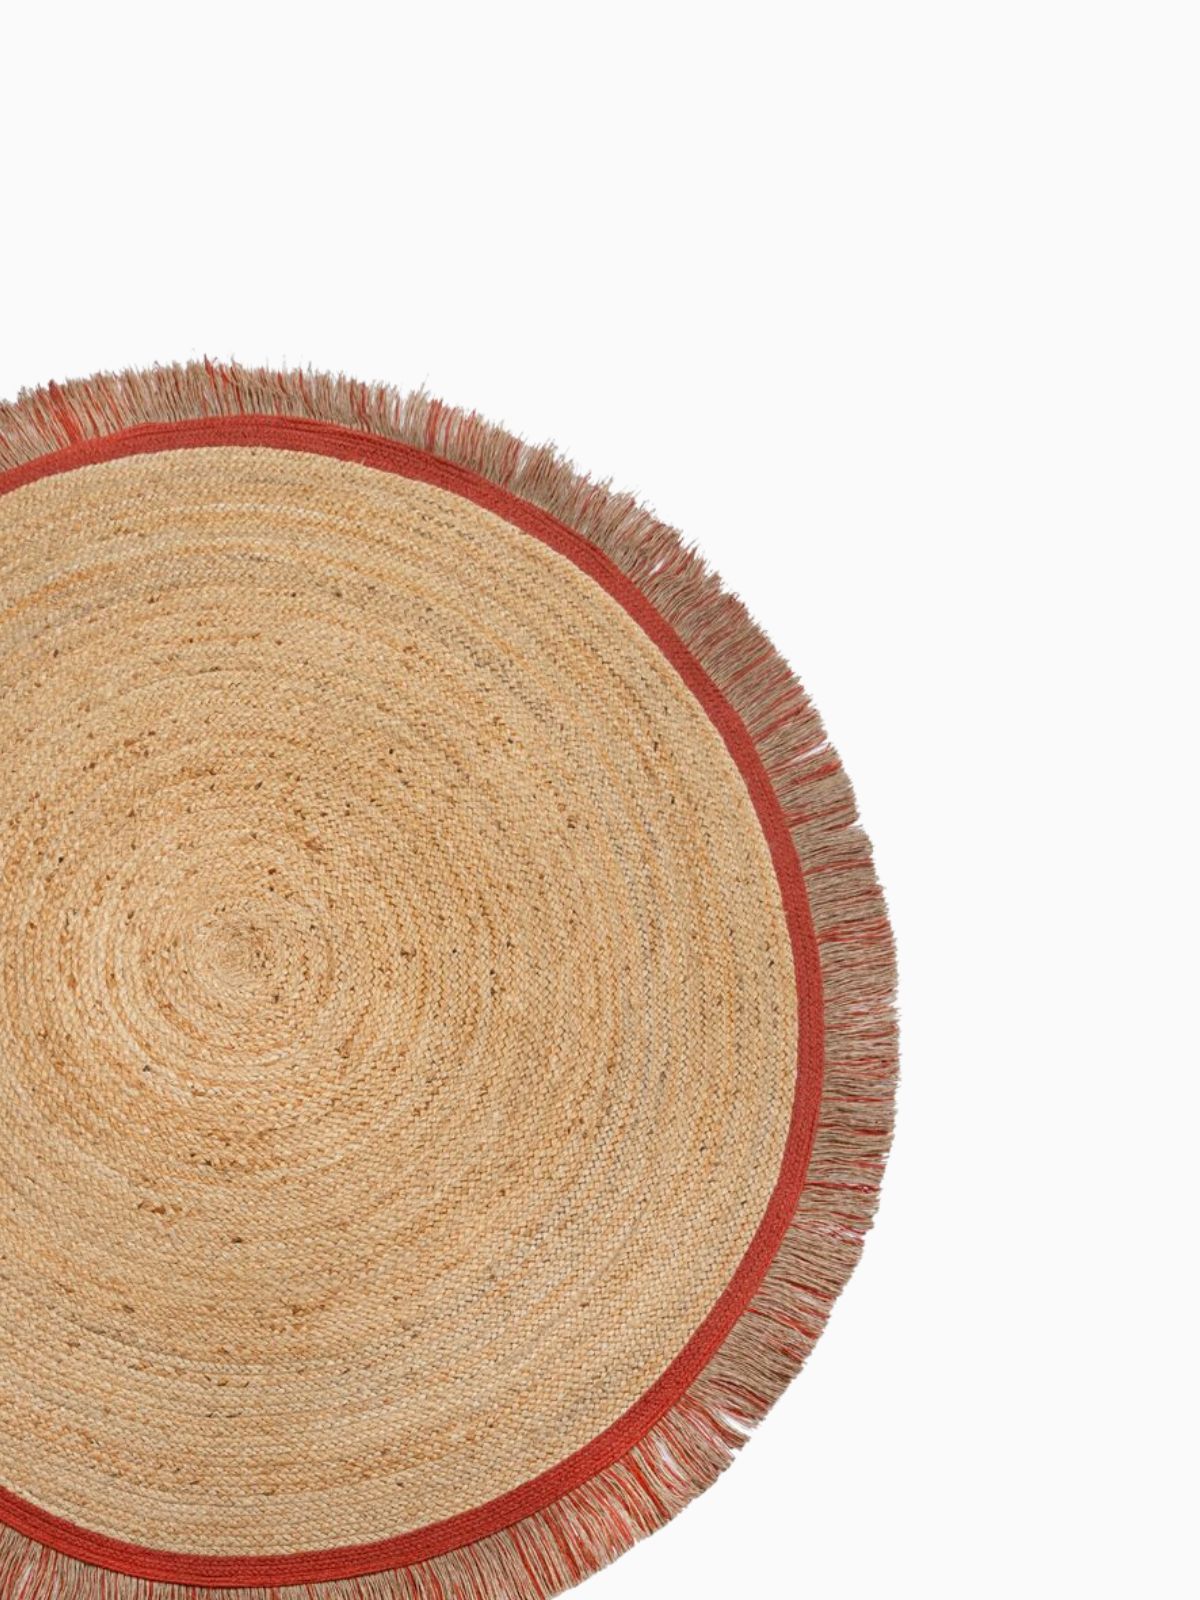 Tappeto rotondo Kahana in iuta, in colore rosso e naturale 180x180 cm.-3